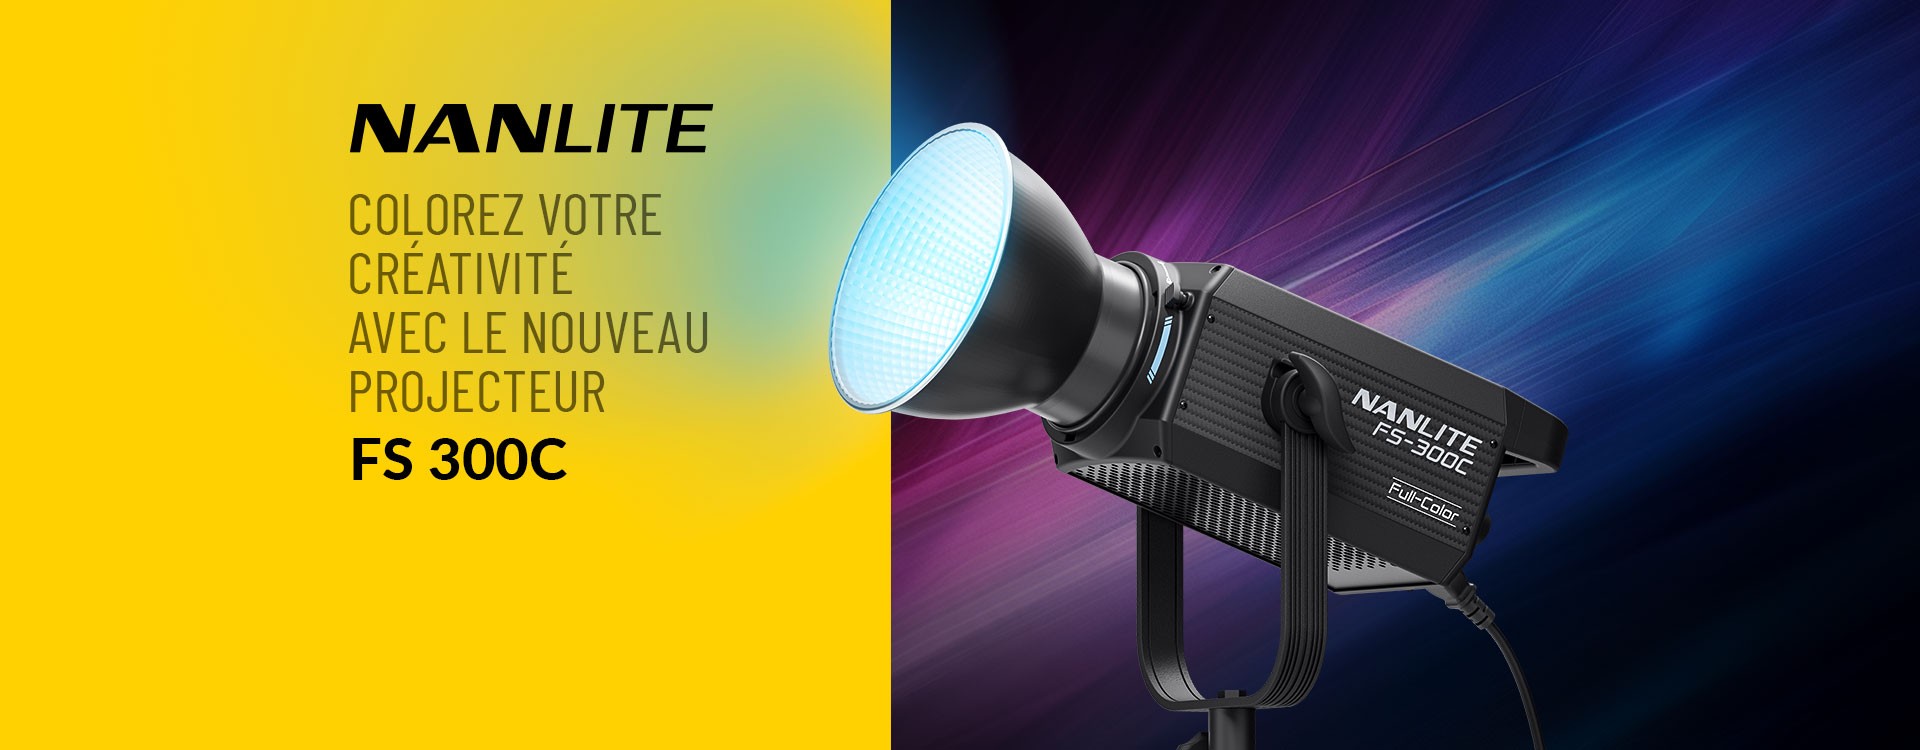 Colorez votre créativité avec le nouveau projecteur Nanlite FS-300C